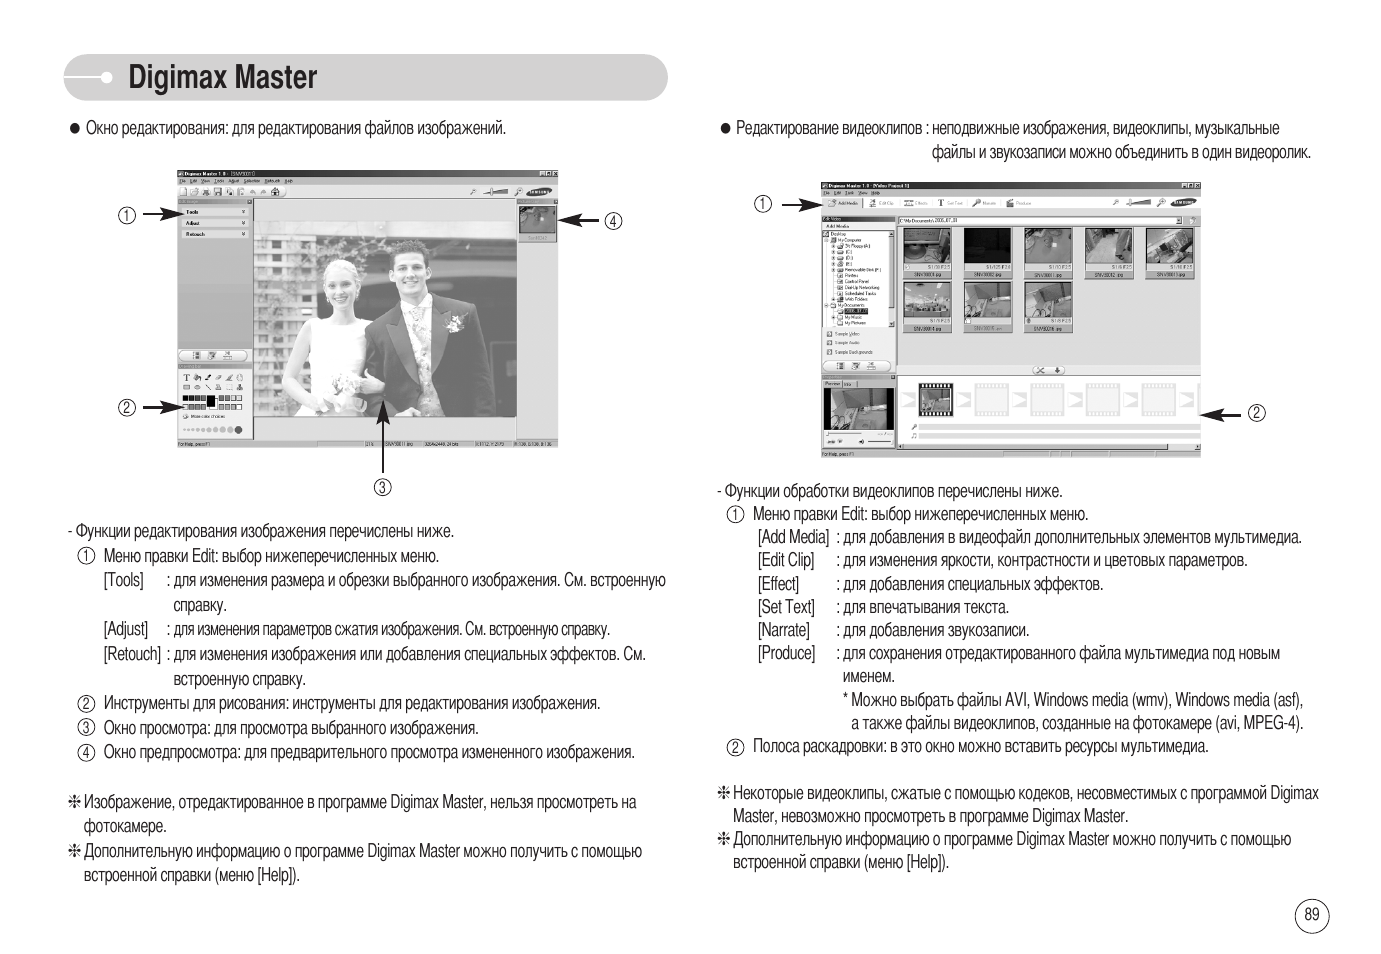 Samsung Digimax nv3. Upc4 Master инструкция. Telarm Master руководство. Кондиционеры Tornado Master инструкция по монтажу.